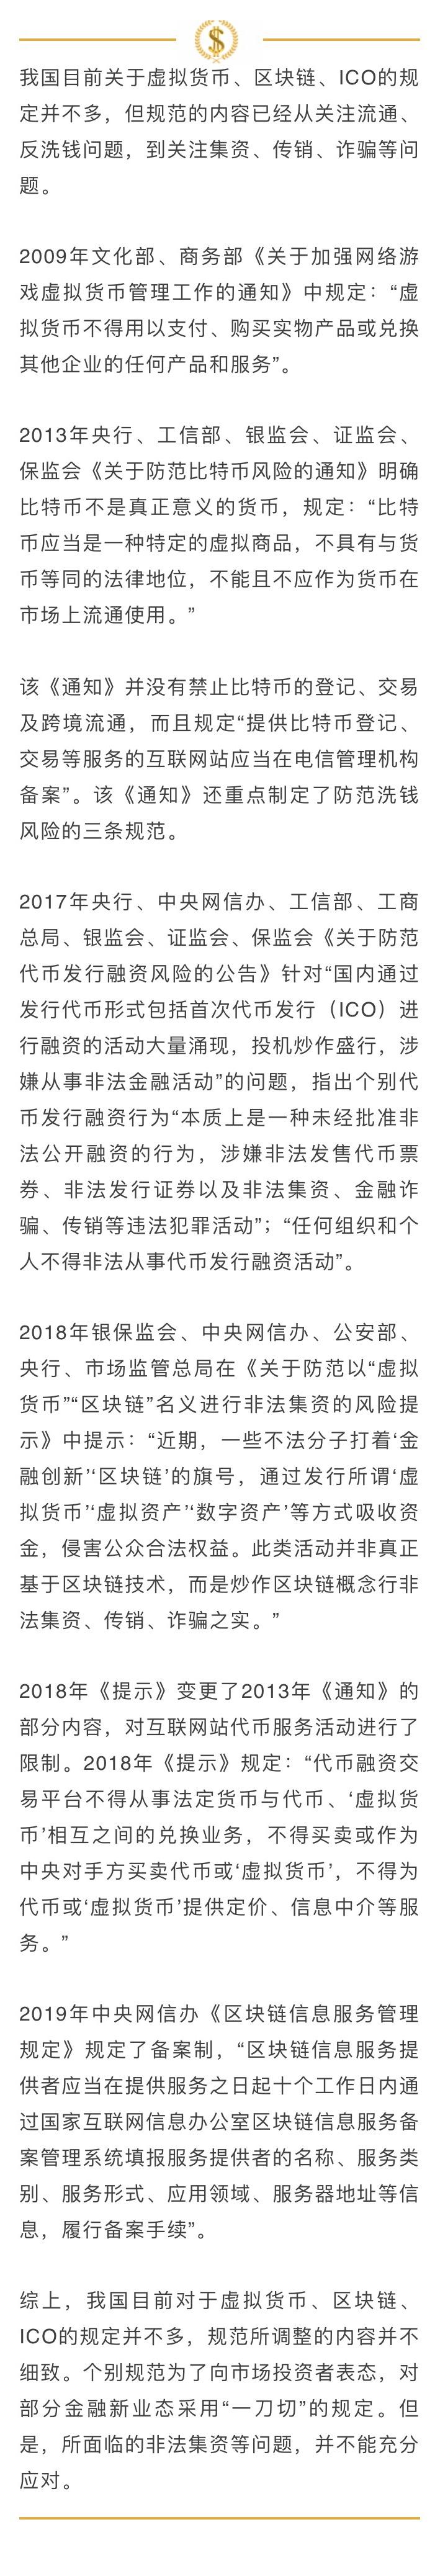 是时候公布真相上海韦纳软件科技有限公司发表《声明》